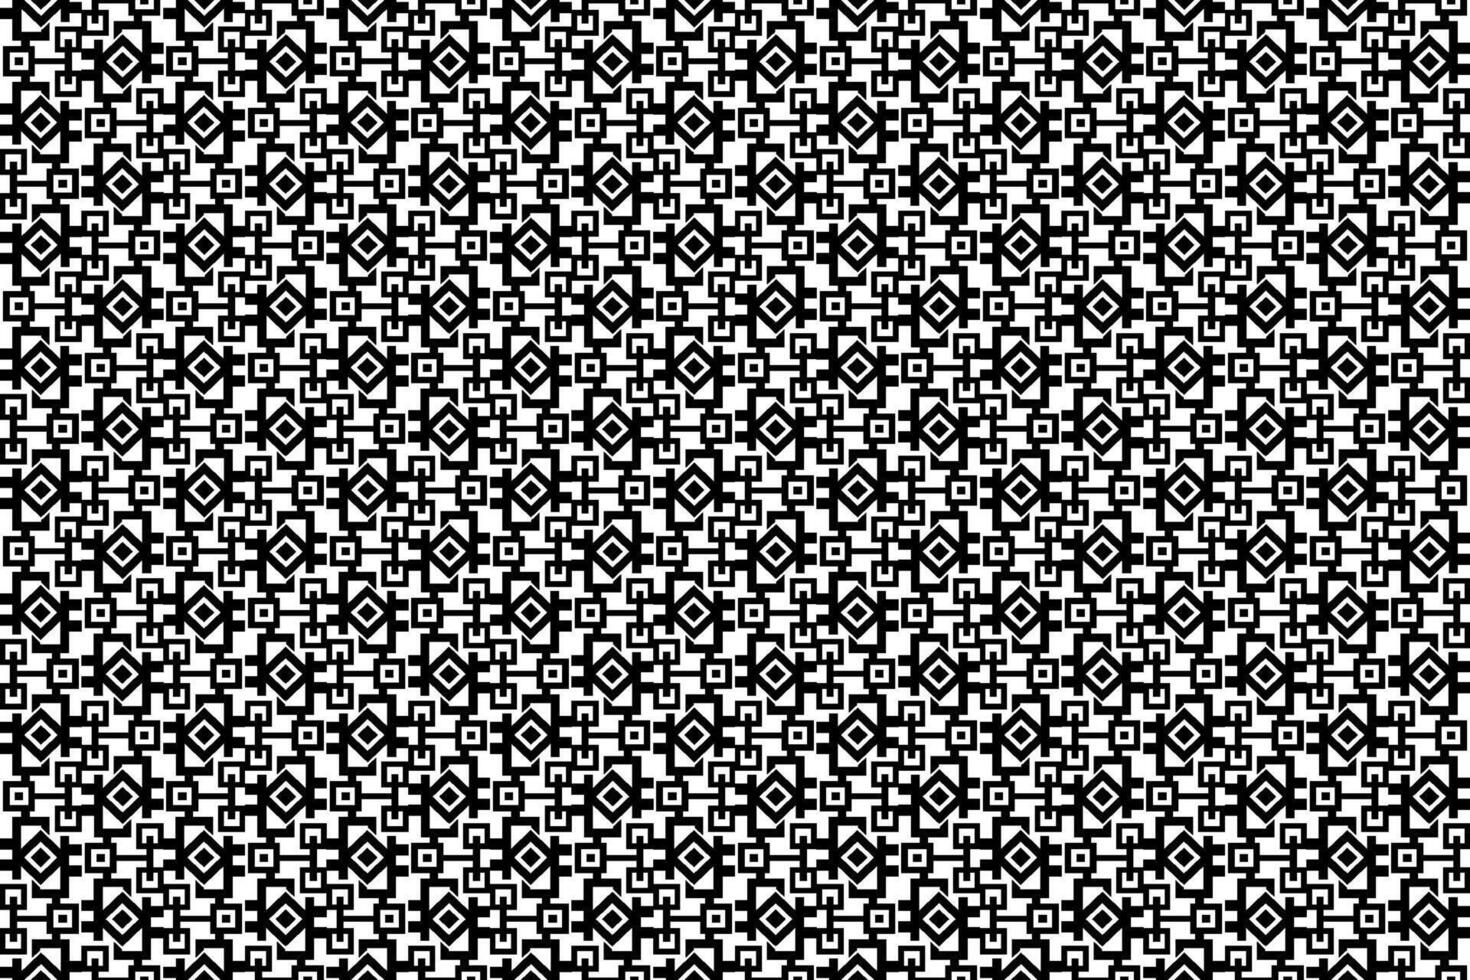 abstrakt sömlös mosaik- mönster med upprepa element. svart och vit svartvit texturerad mönster med geometrisk element vektor